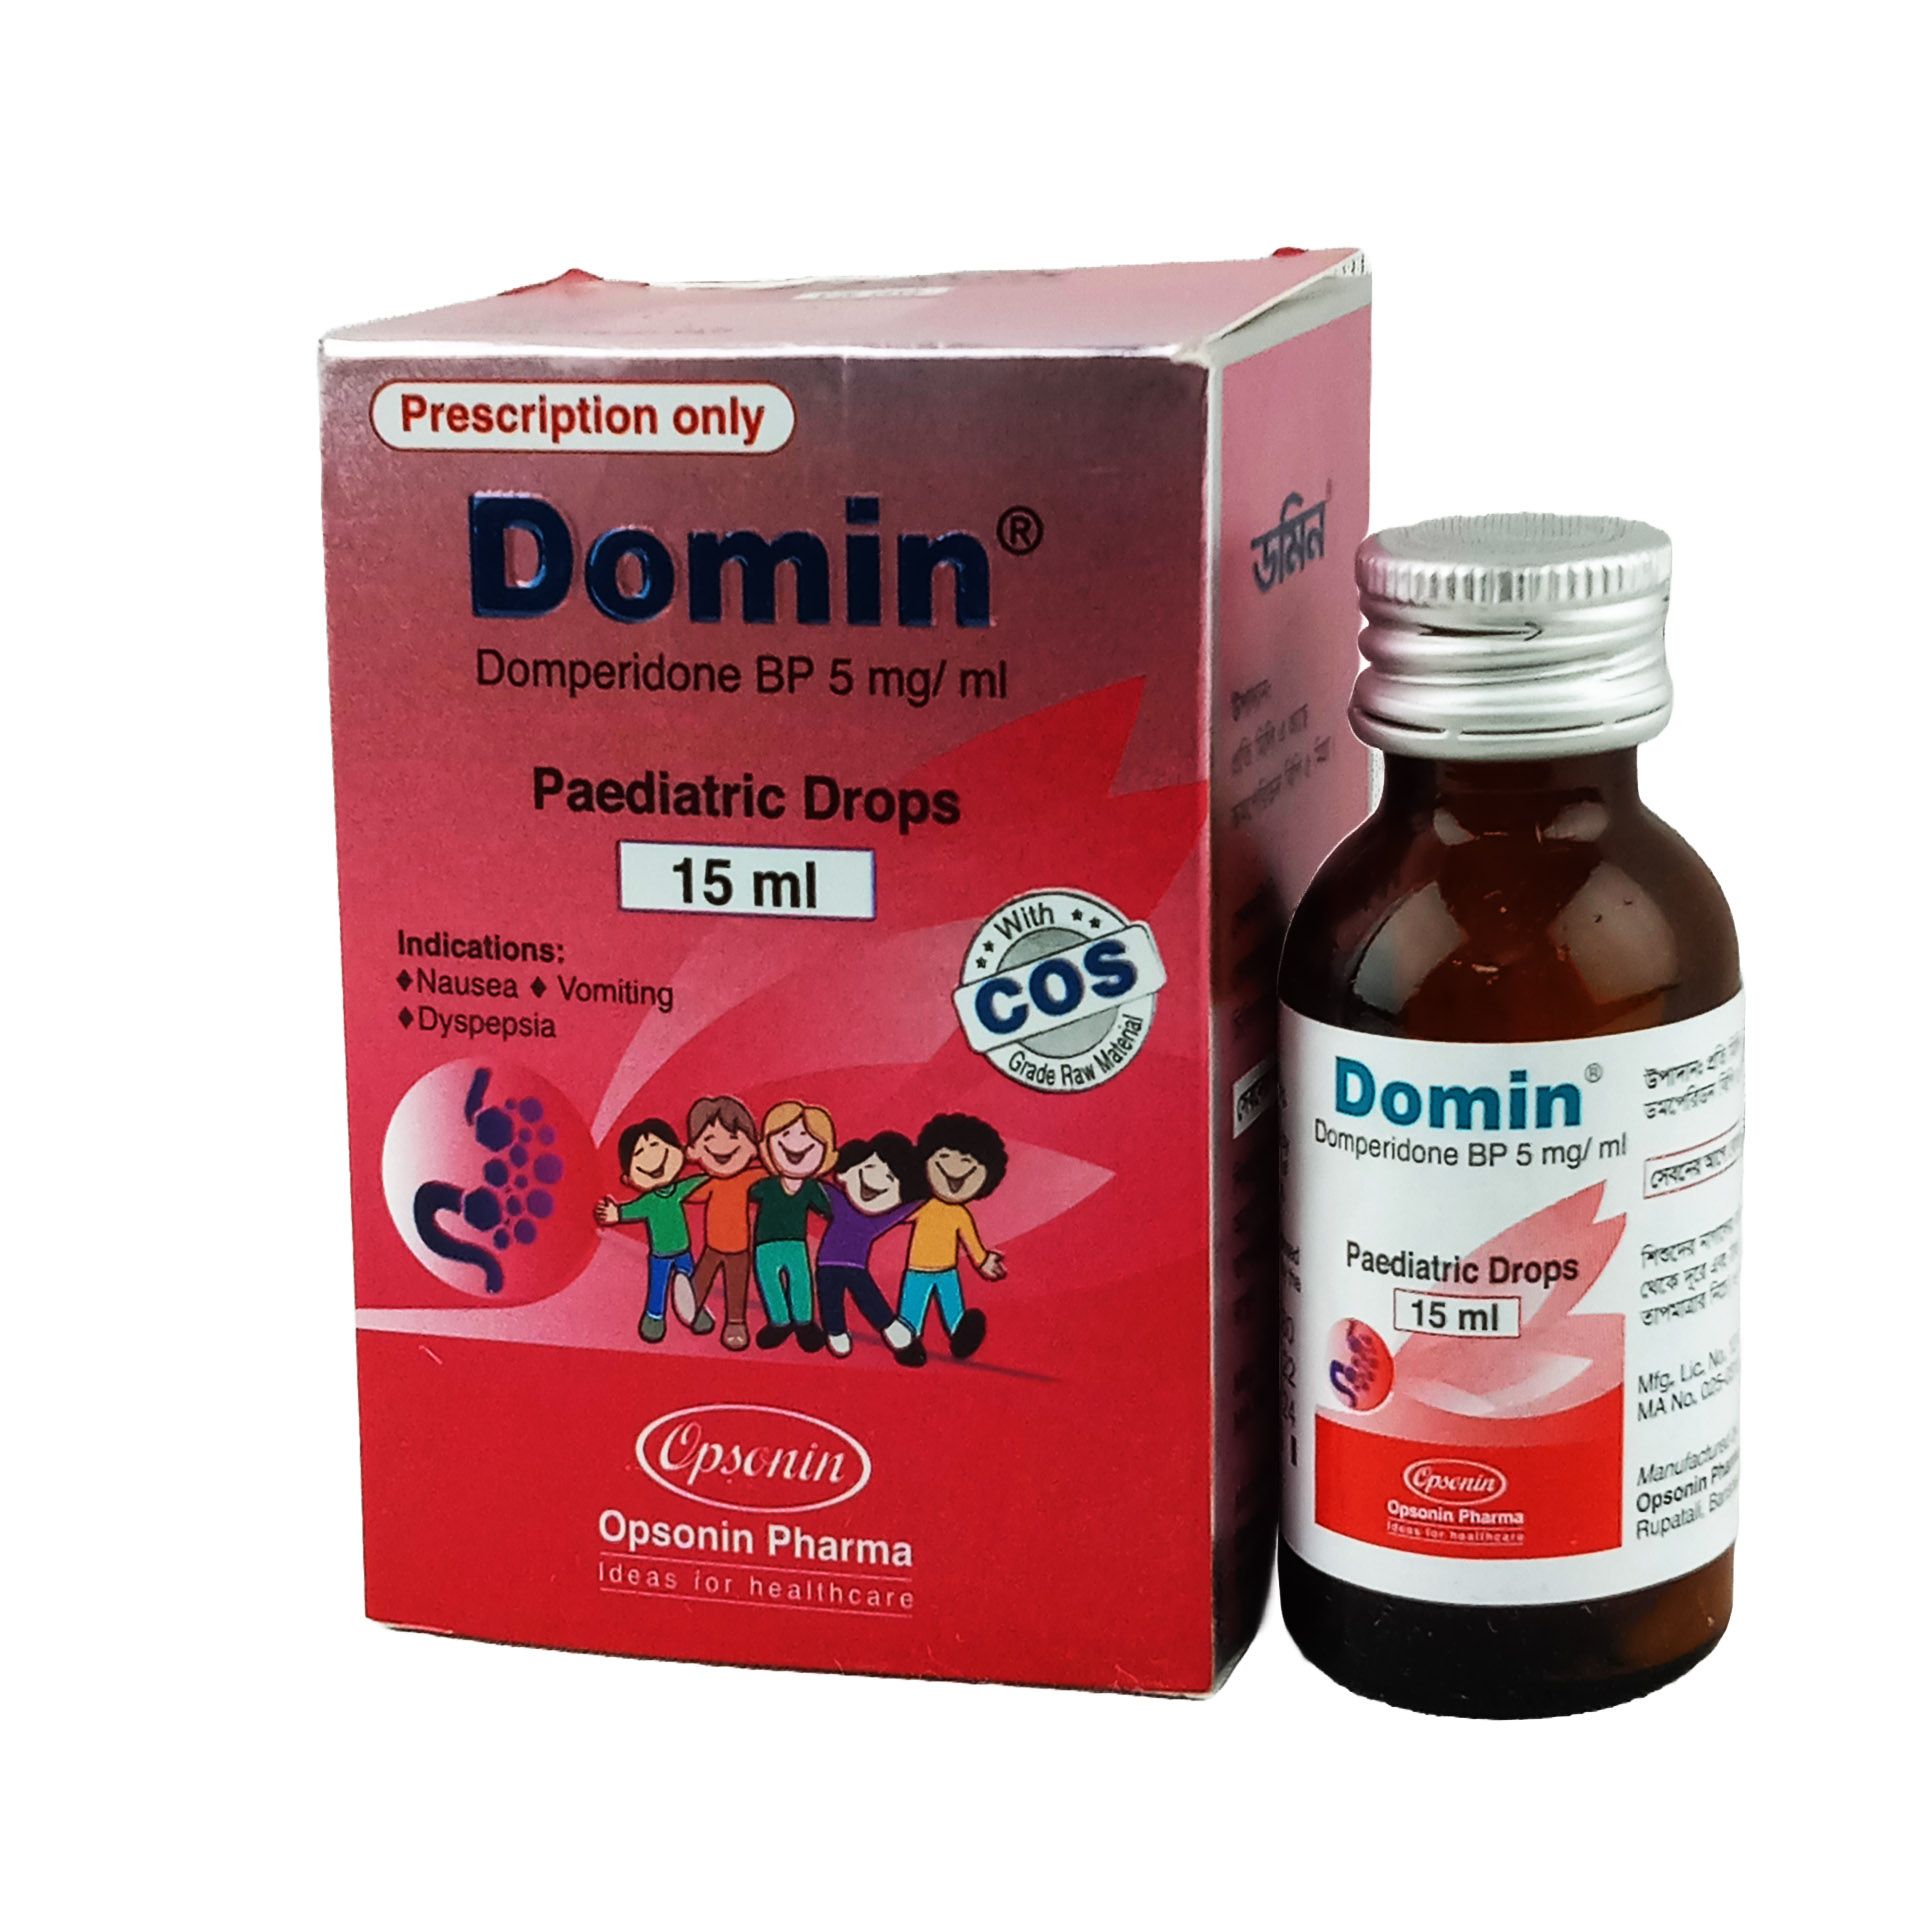 Domin 5mg/ml Pediatric Drops